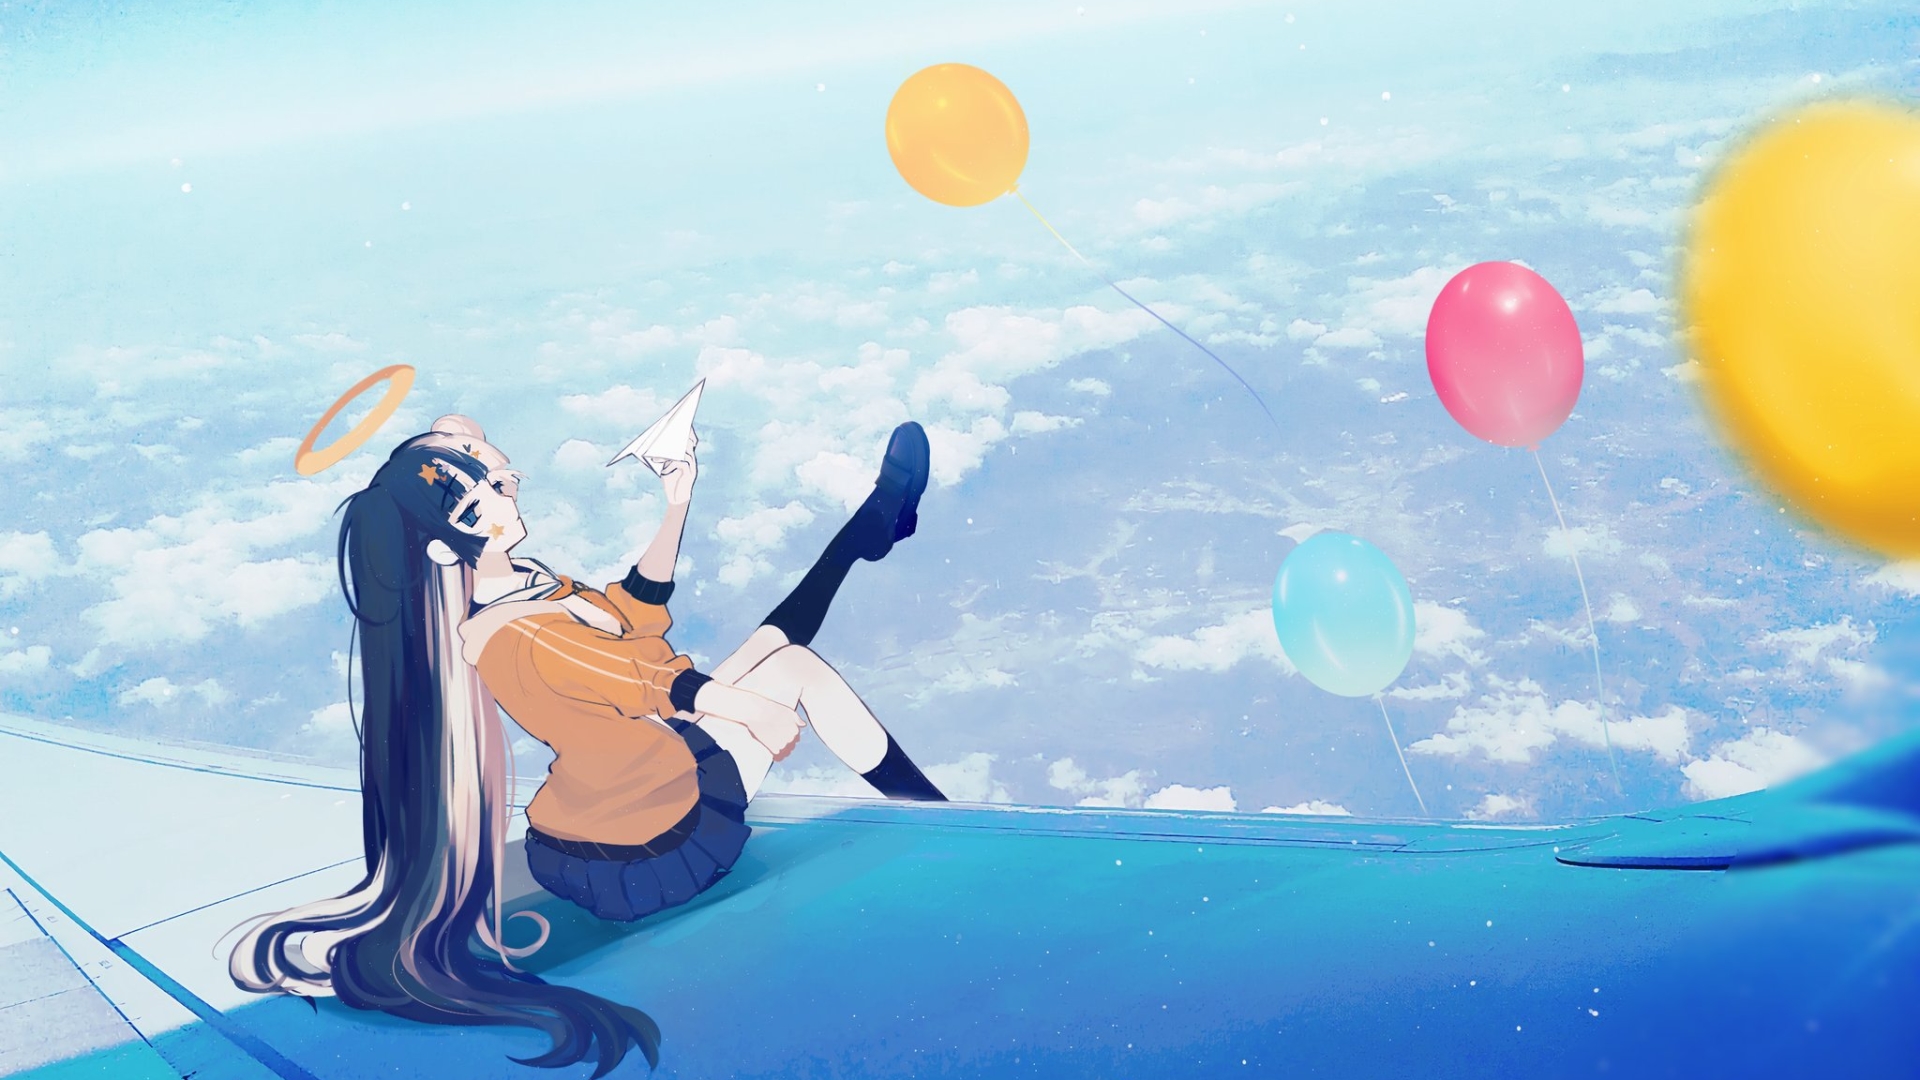 Anime 1920x1080 anime anime girls sky long hair balloon clouds